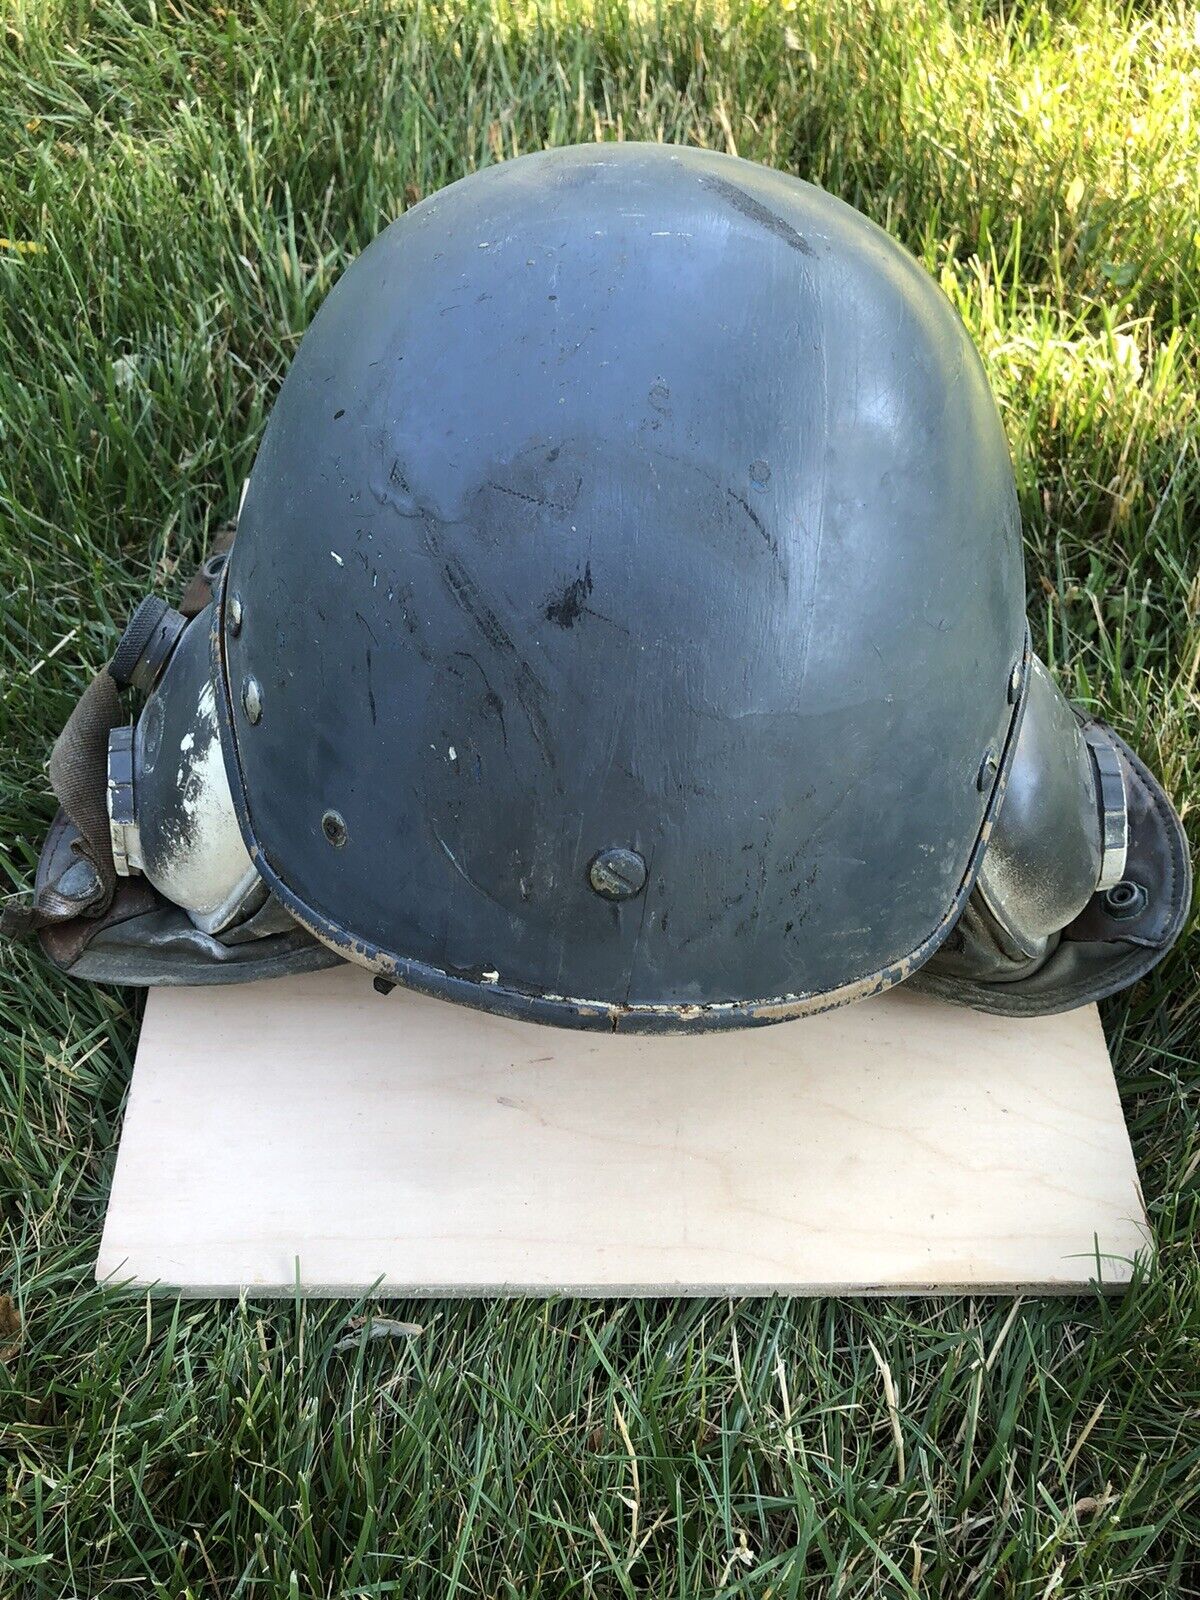 Gentex helmet 1960s Vietnam conflict named to “Miller”